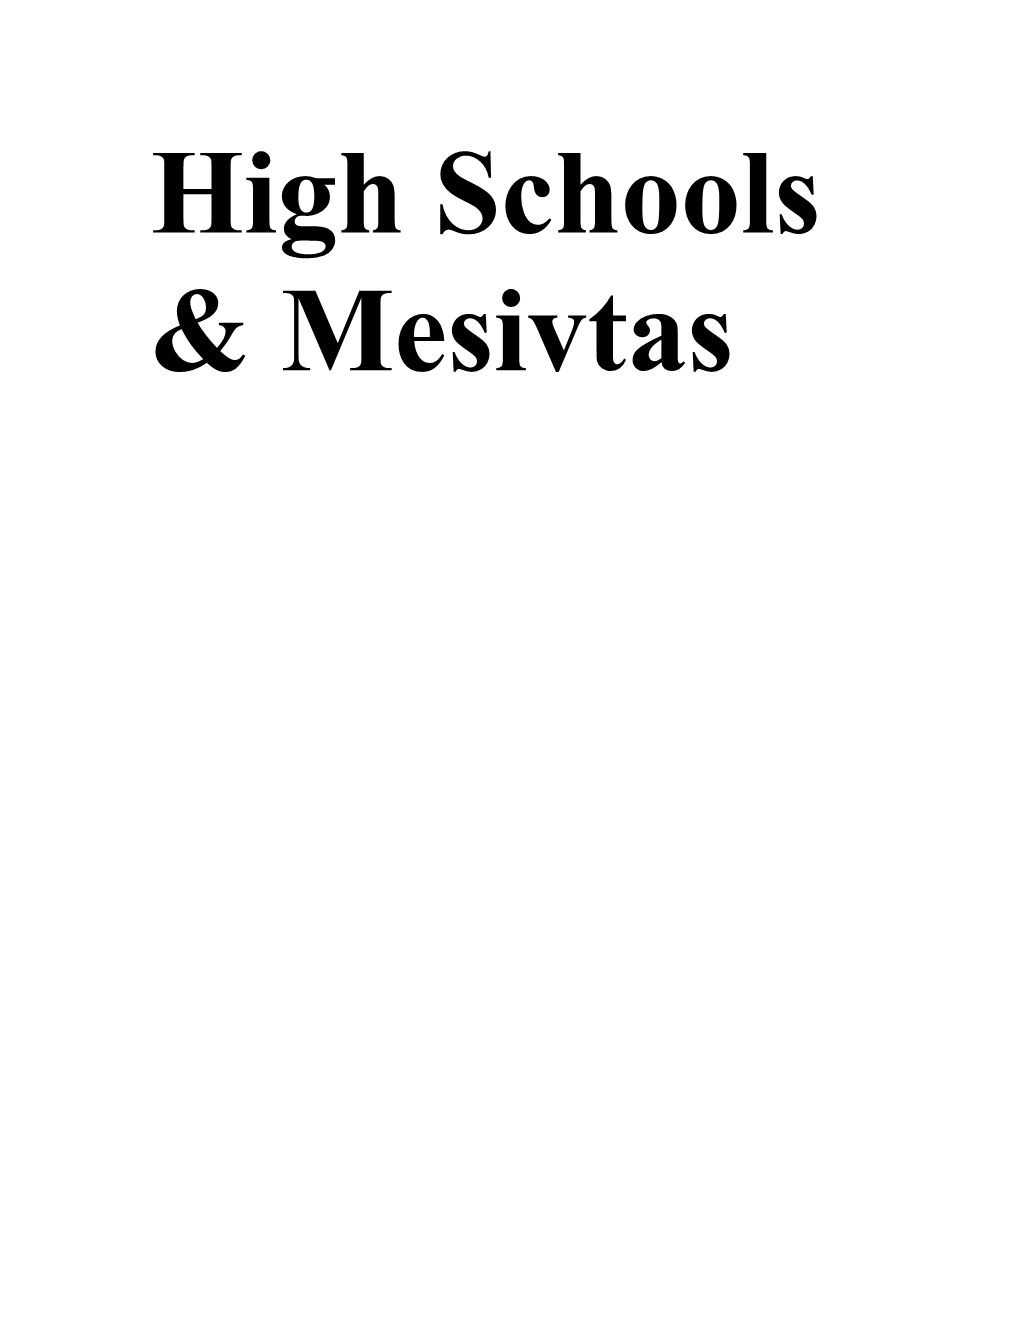 High Schools & Mesivtas